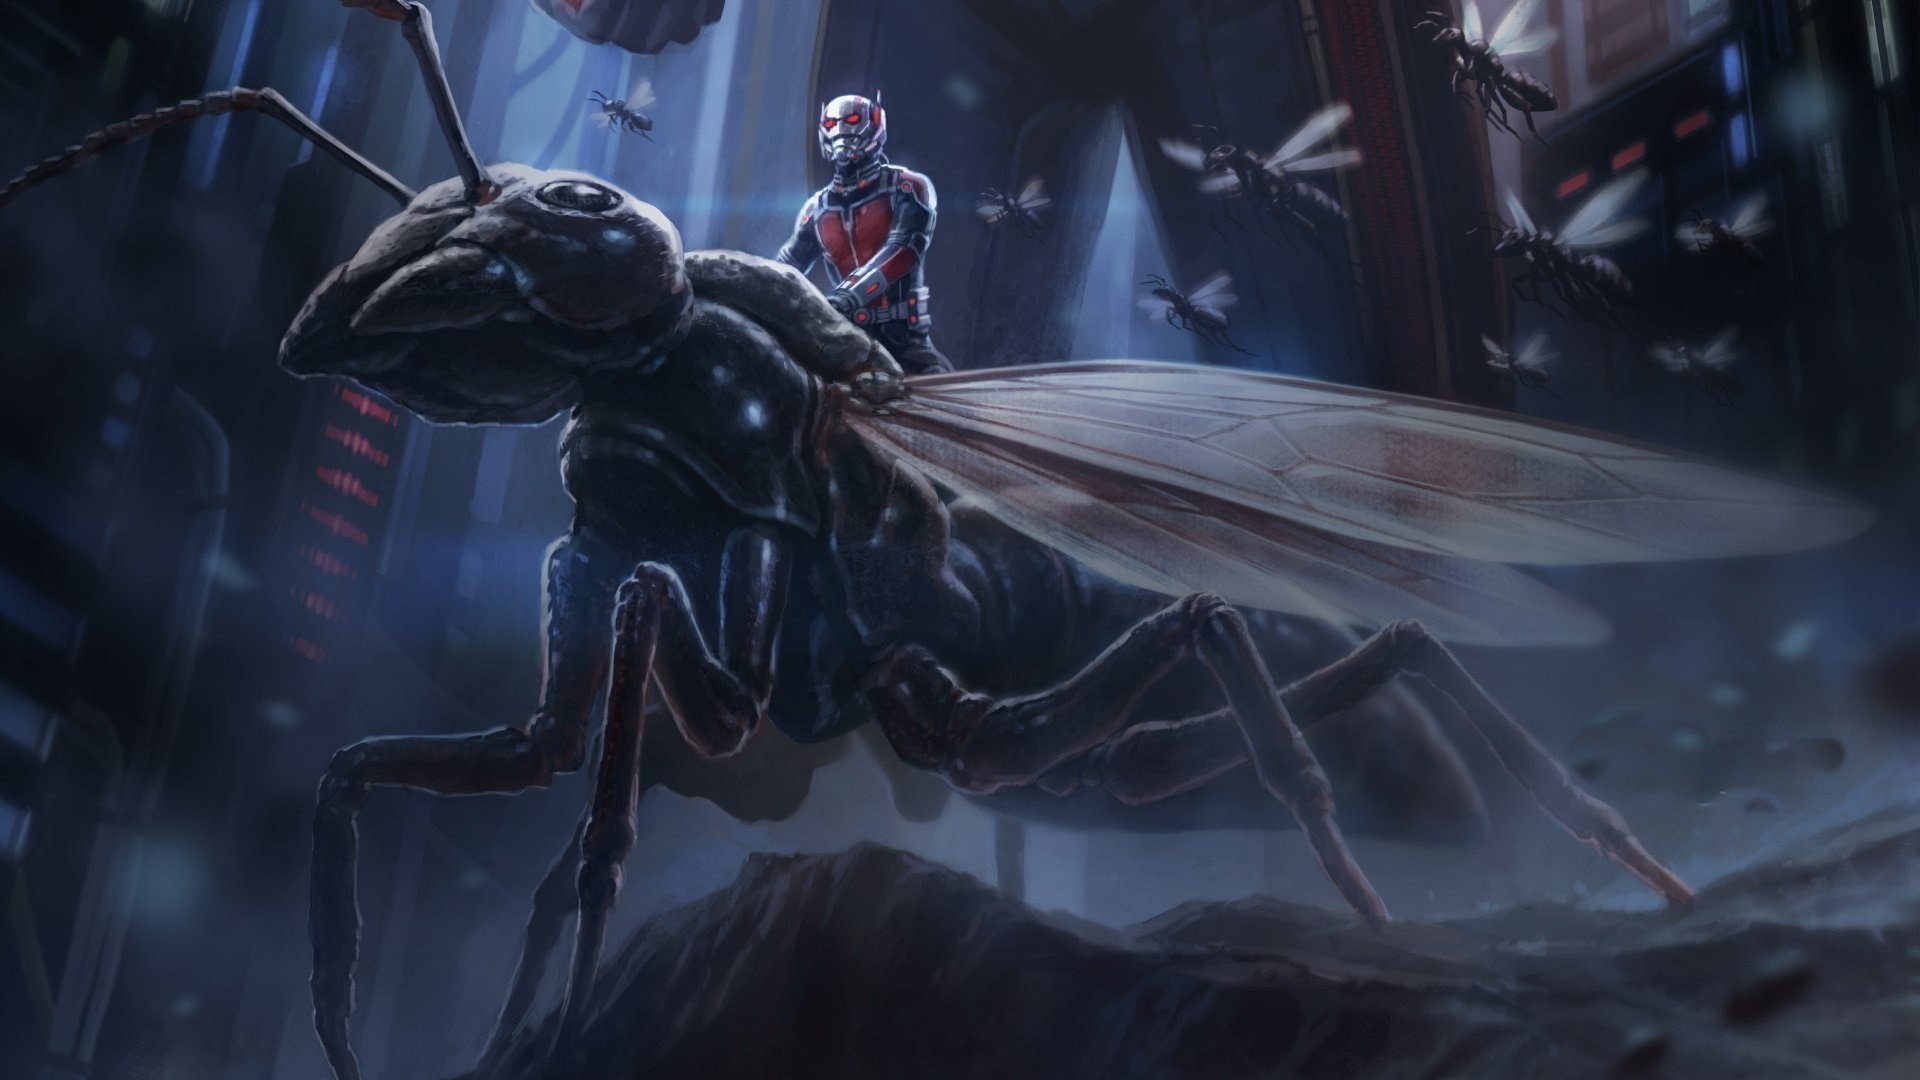 2015 Marvel Movie Ant Man Teaser Poster   Ant Man Wallpaper Ant Man